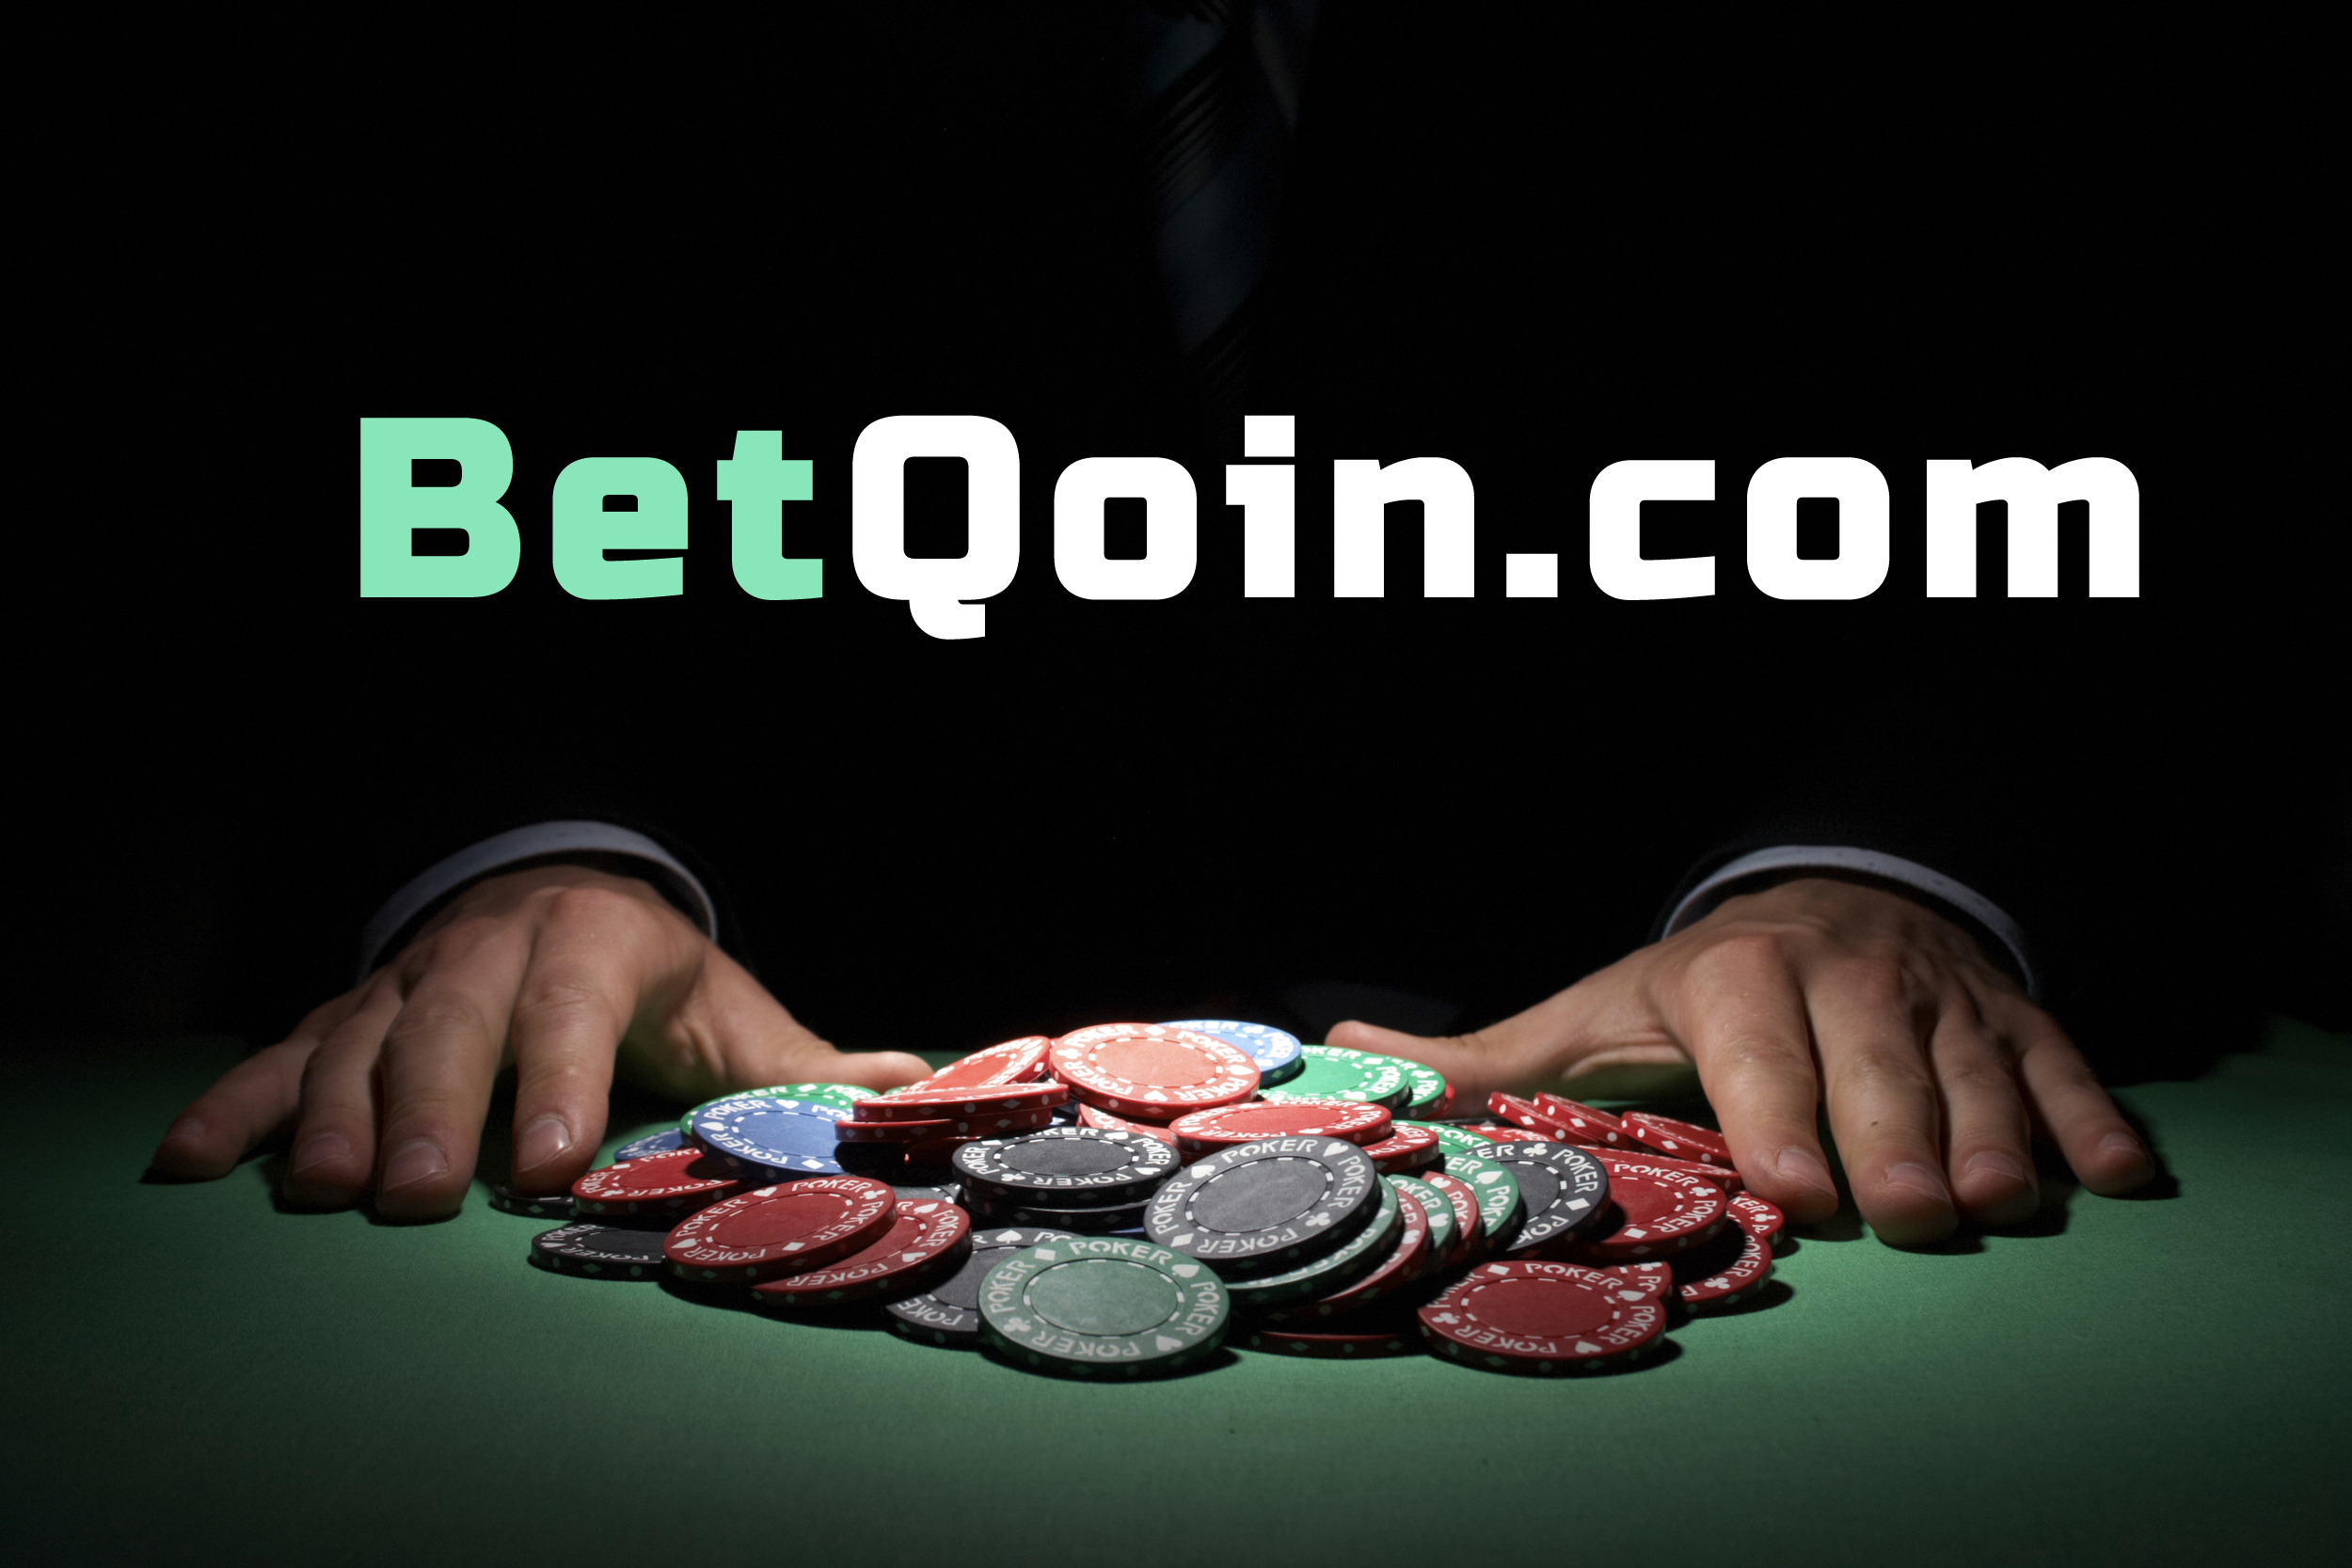 Poker+Chips+Vegas+bet+qoin+concept.jpg